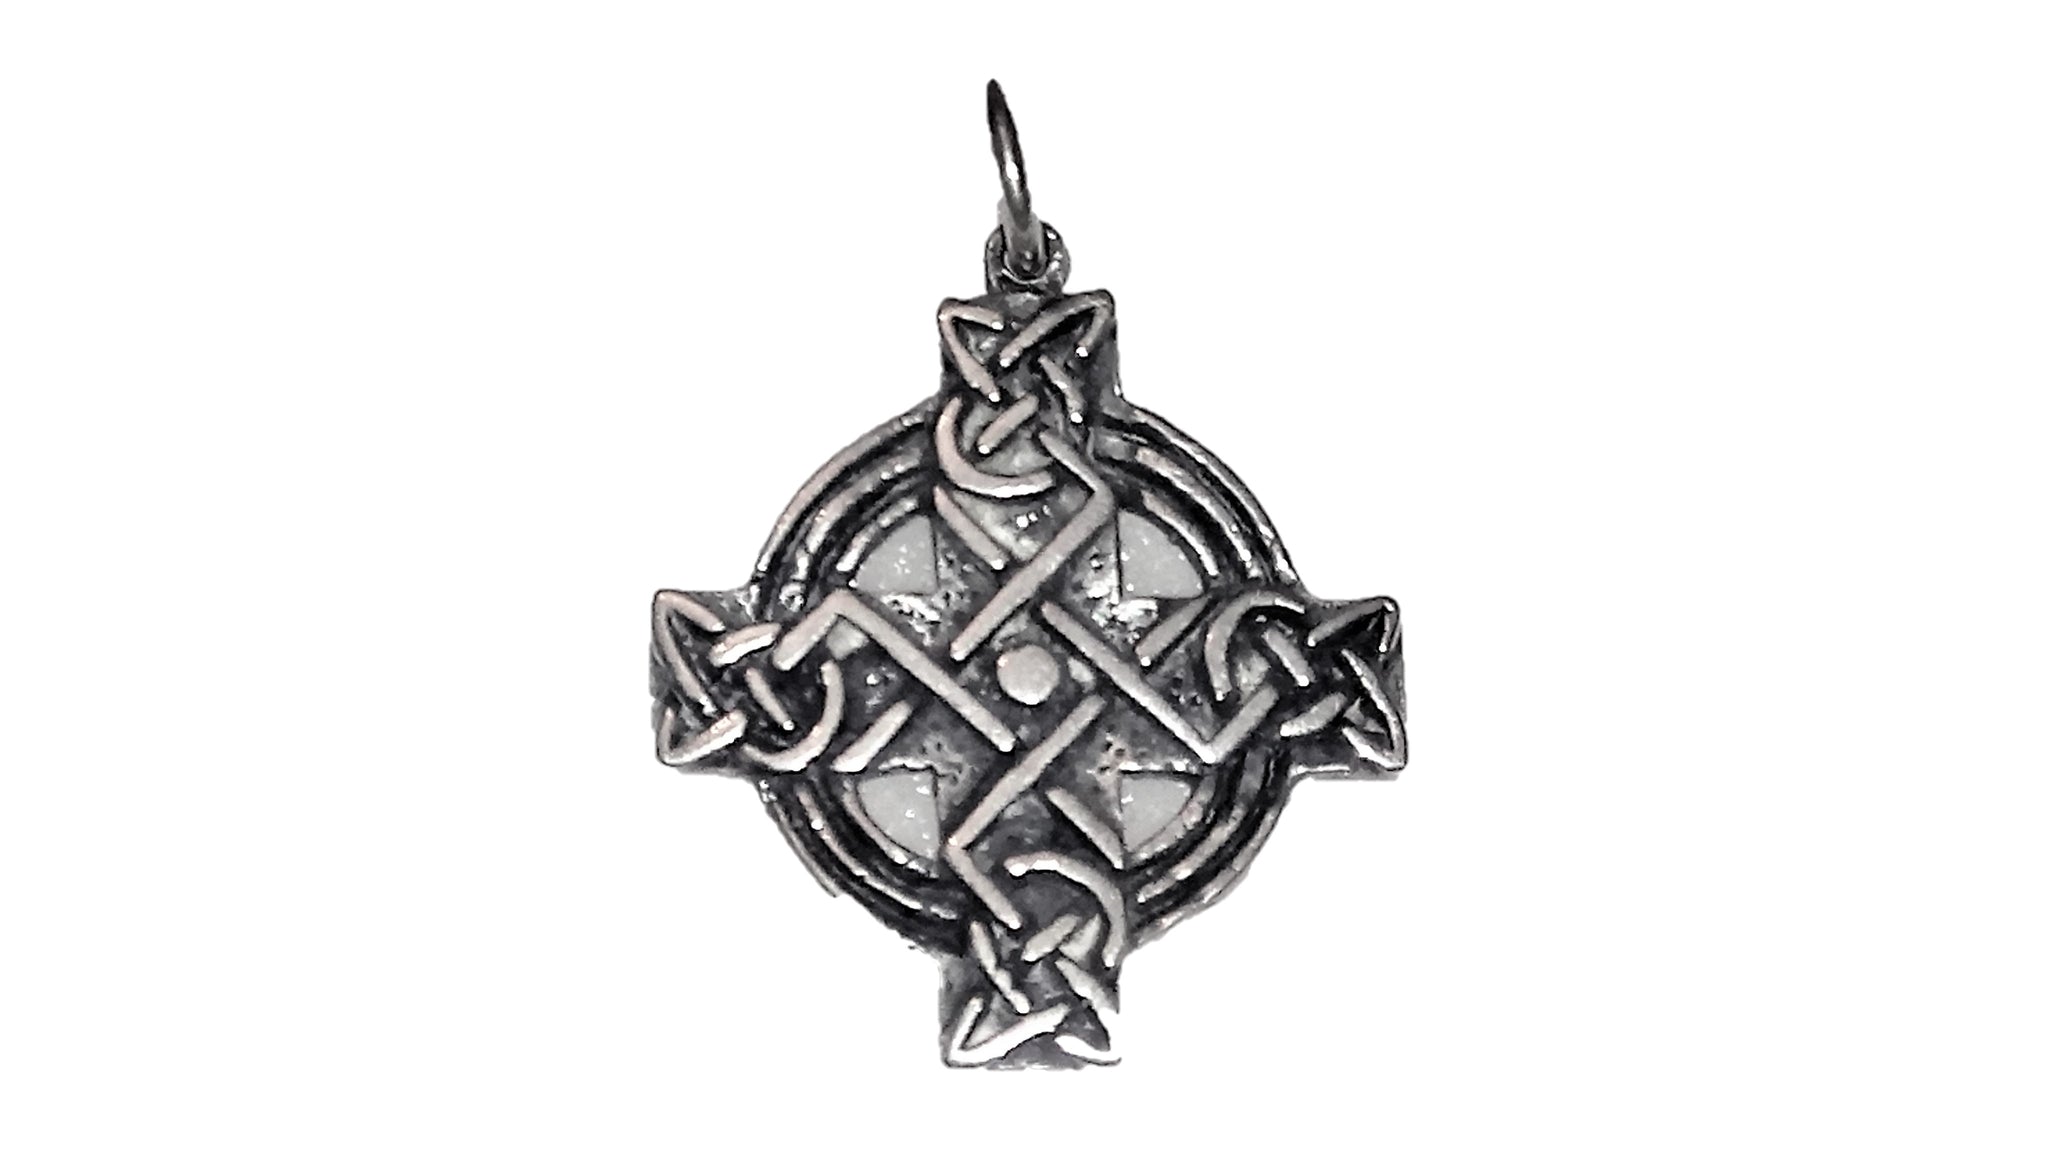 Celtic Cross Pendant - Sterling Silver